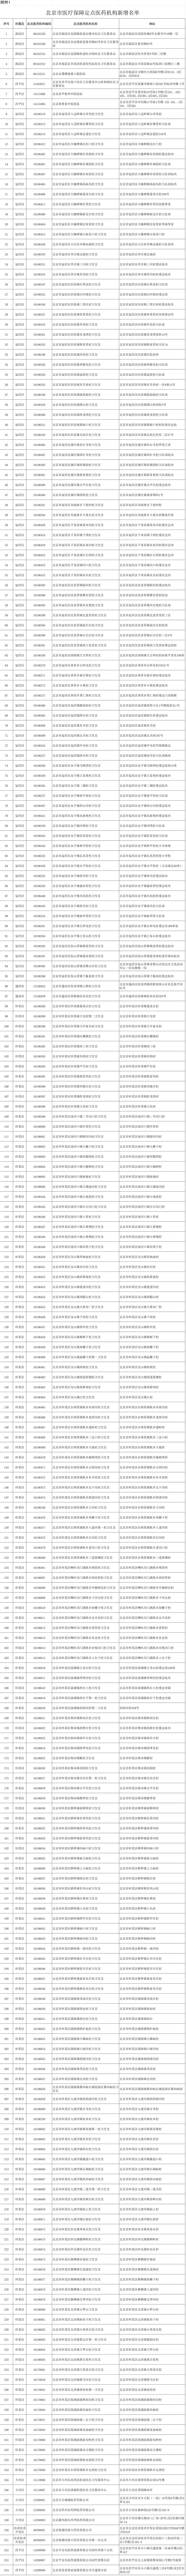 北京今年起新增254家医保定点医药机构 详细名单